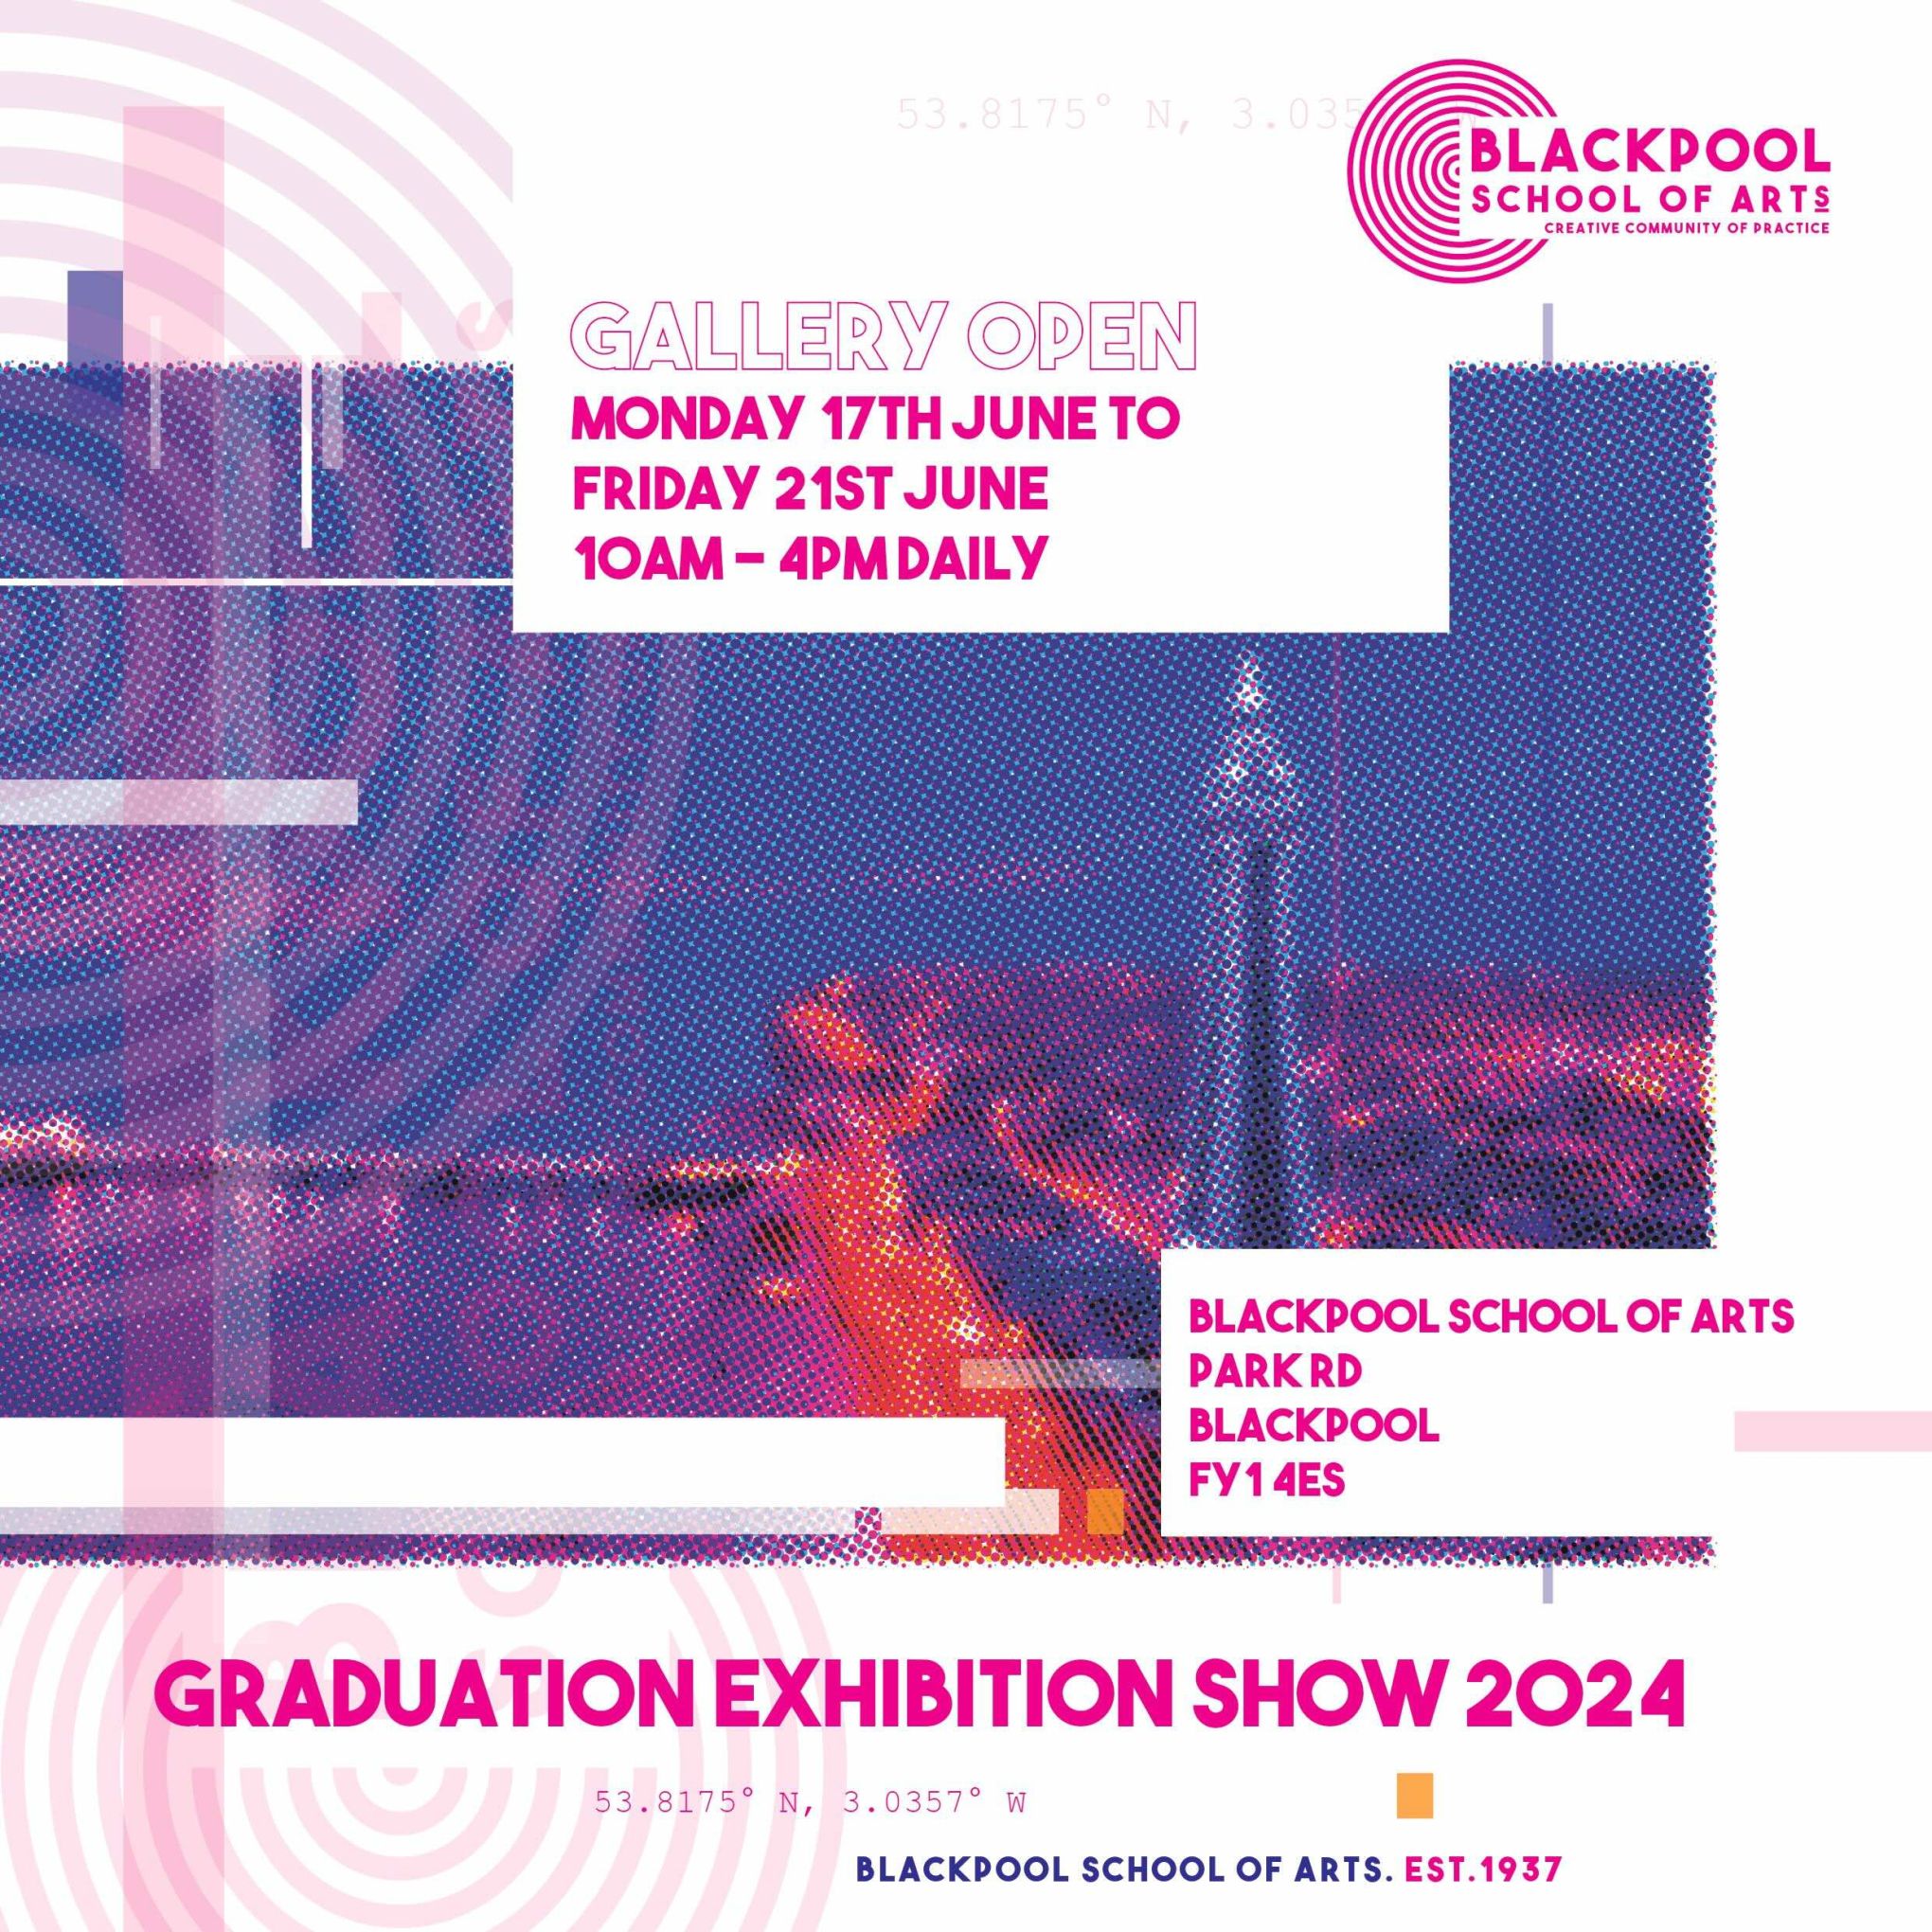 Blackpool School of Arts Graduation Exhibition 2024